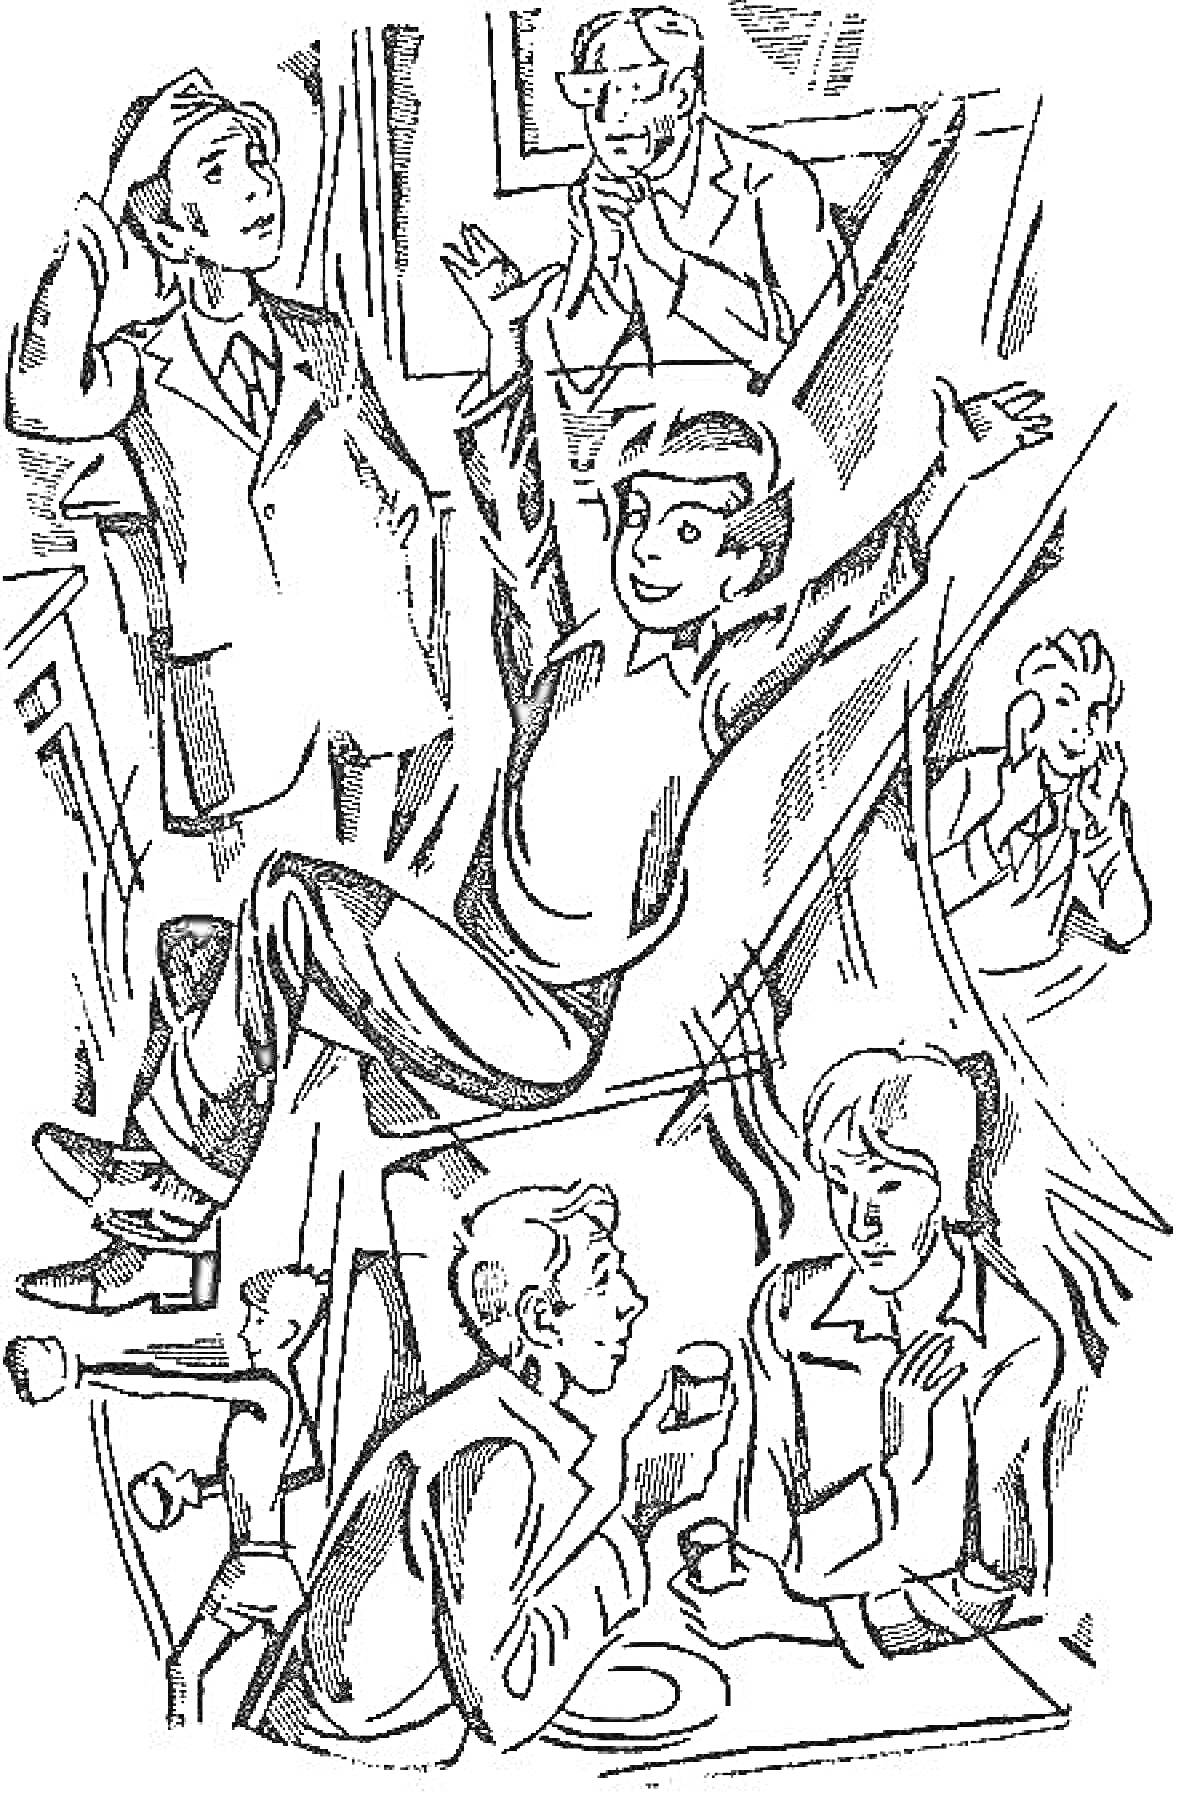 Раскраска Мужчина в прыжке, мужчины и женщина в шляпах и костюмах, мужчина за столом с чашкой, мужчина с поднятой рукой, удивлённый мужчина, дождь за окном